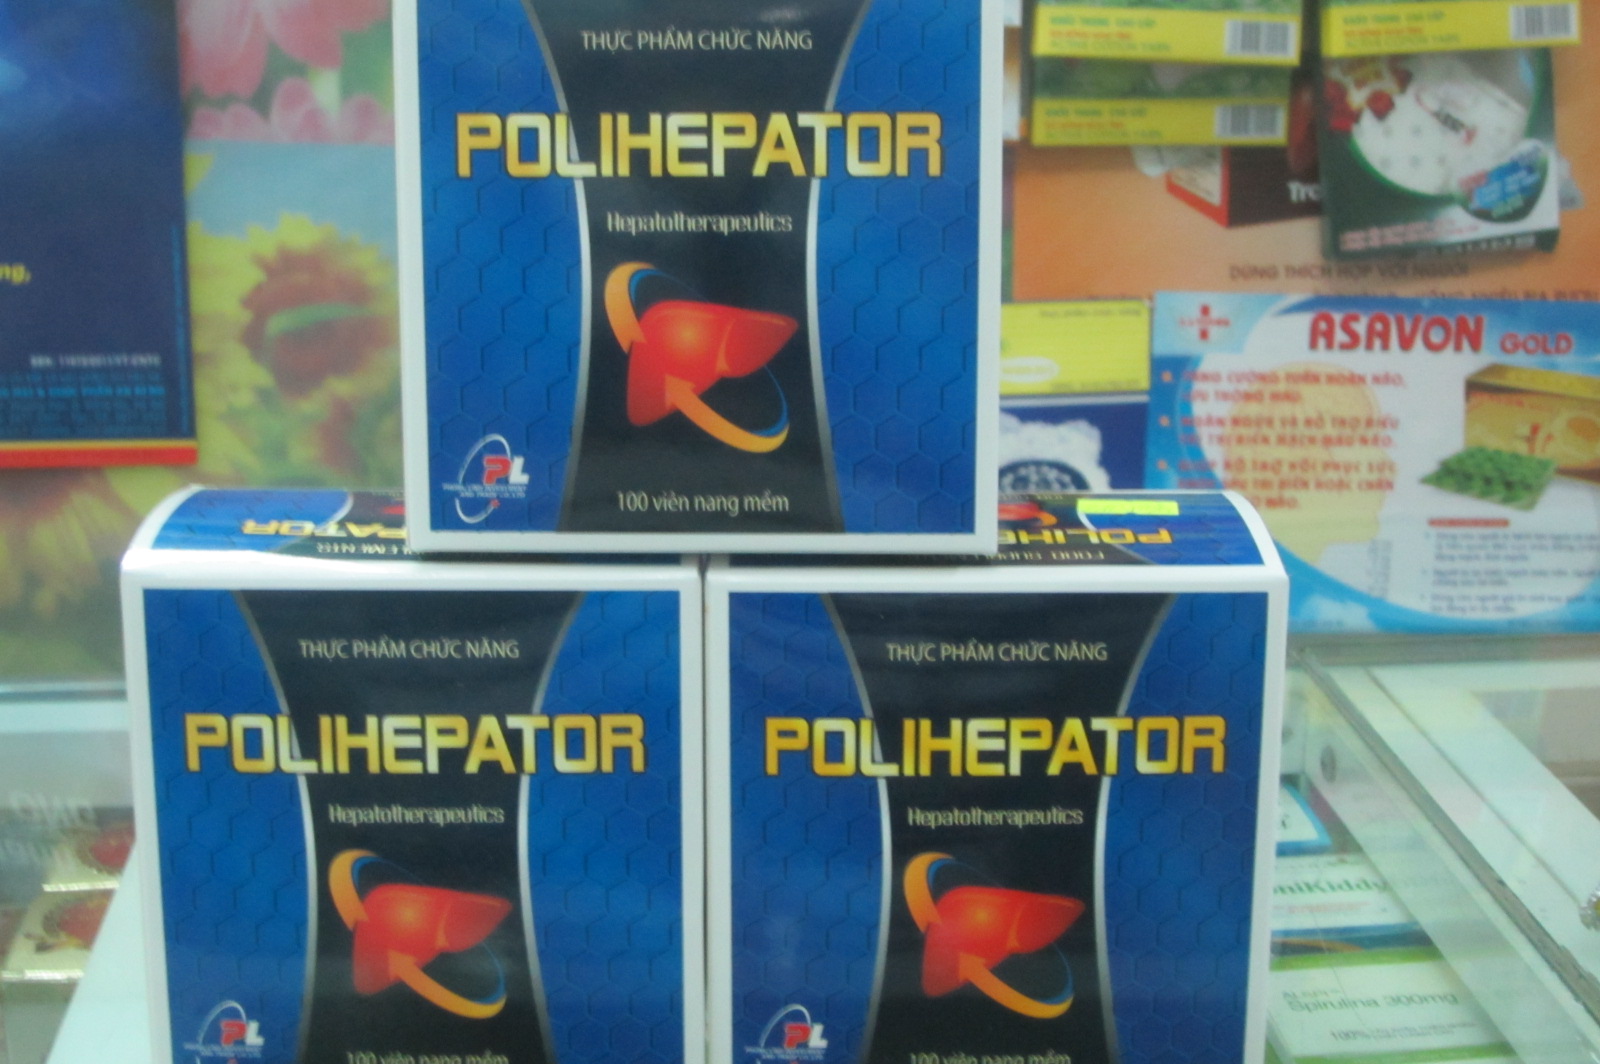 Polihepator